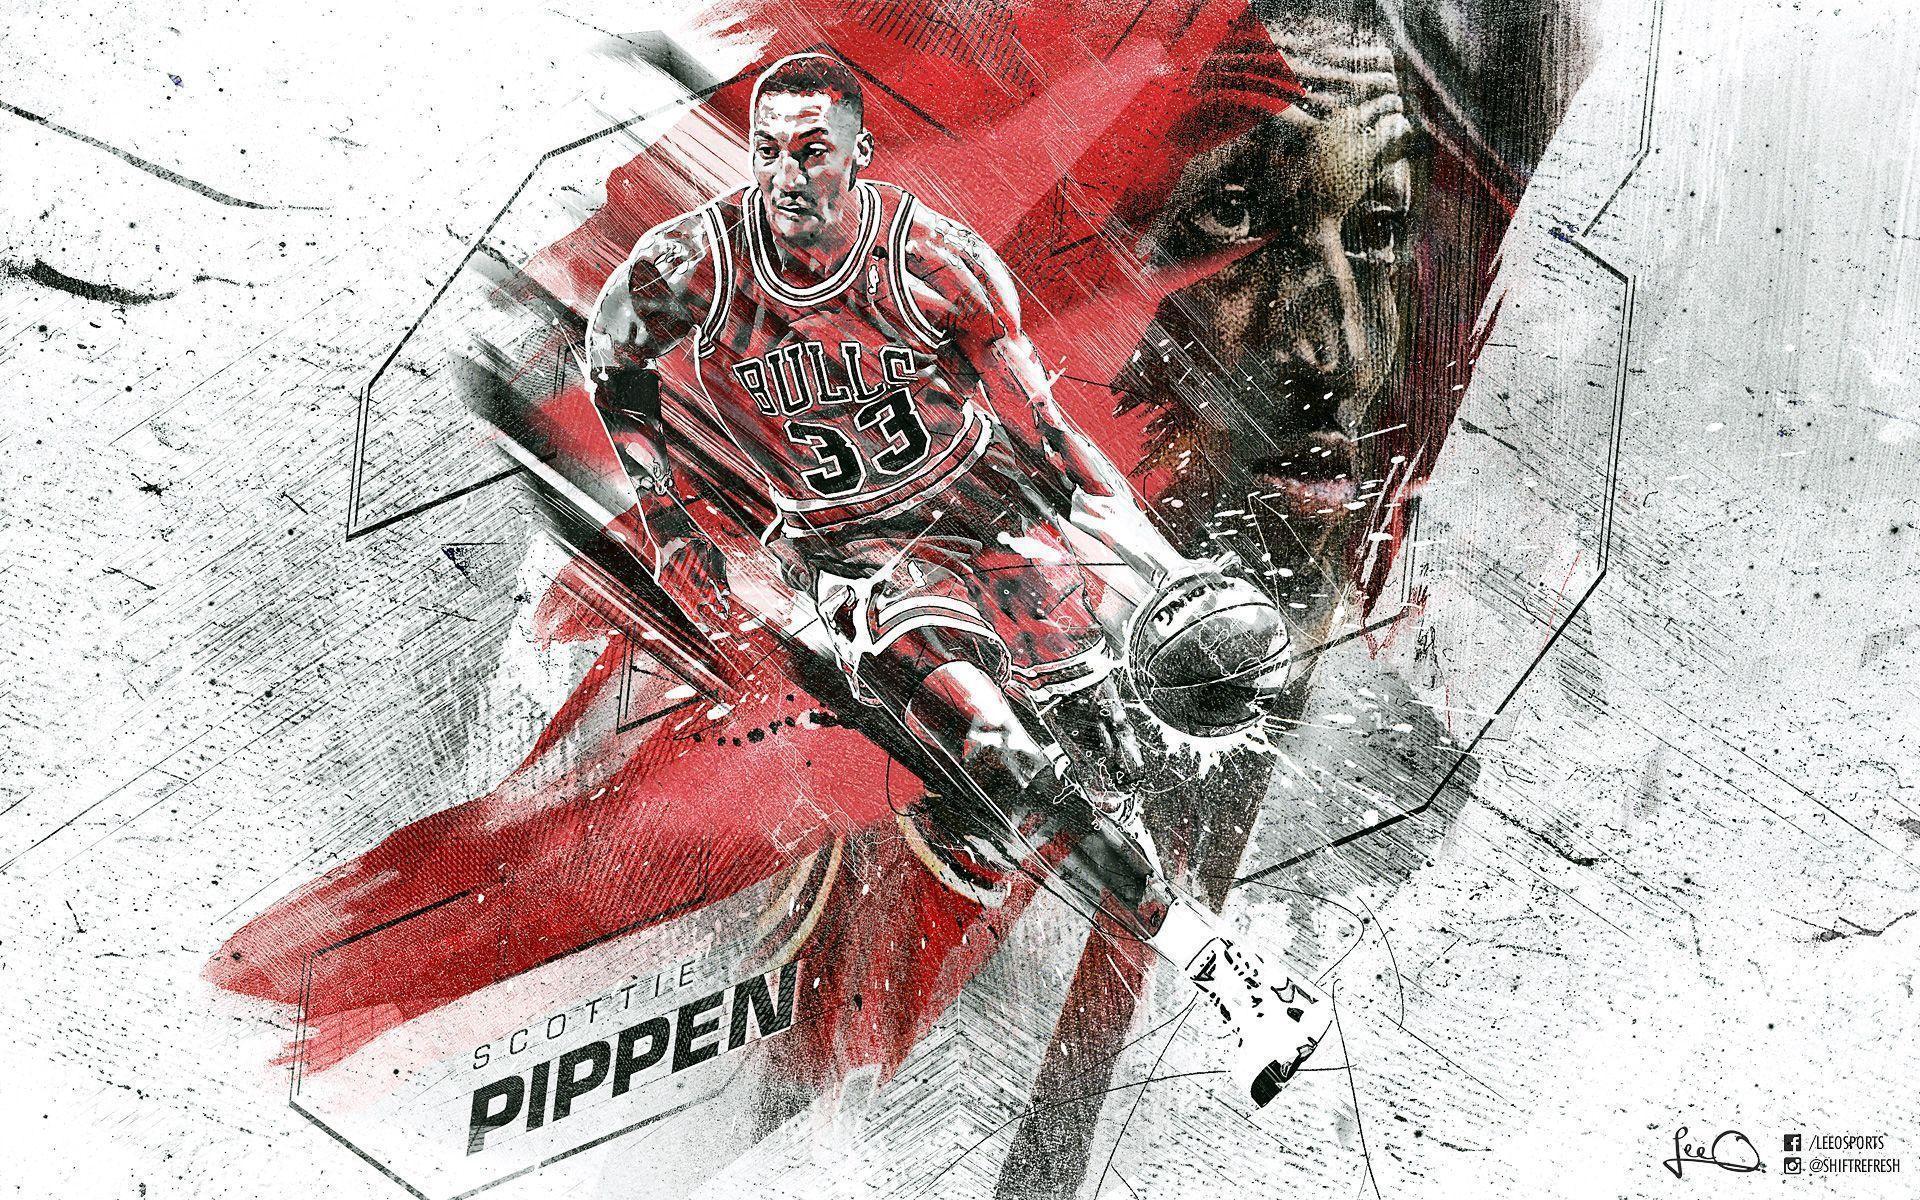 Scottie Pippen Wallpaper. Basketball Wallpaper at